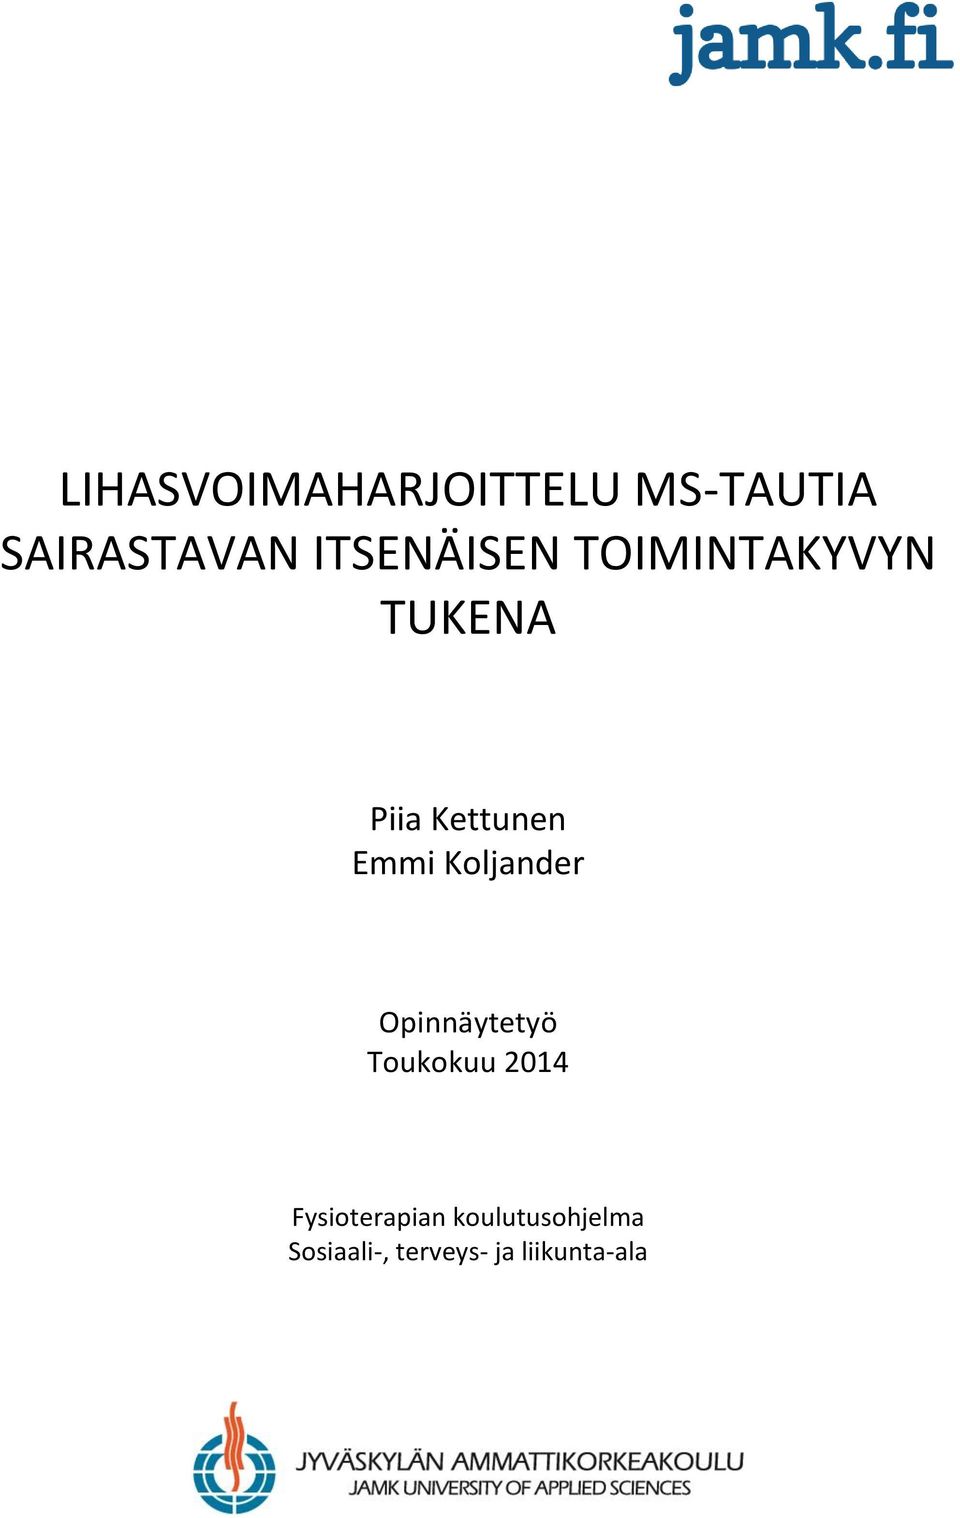 Emmi Koljander Opinnäytetyö Toukokuu 2014